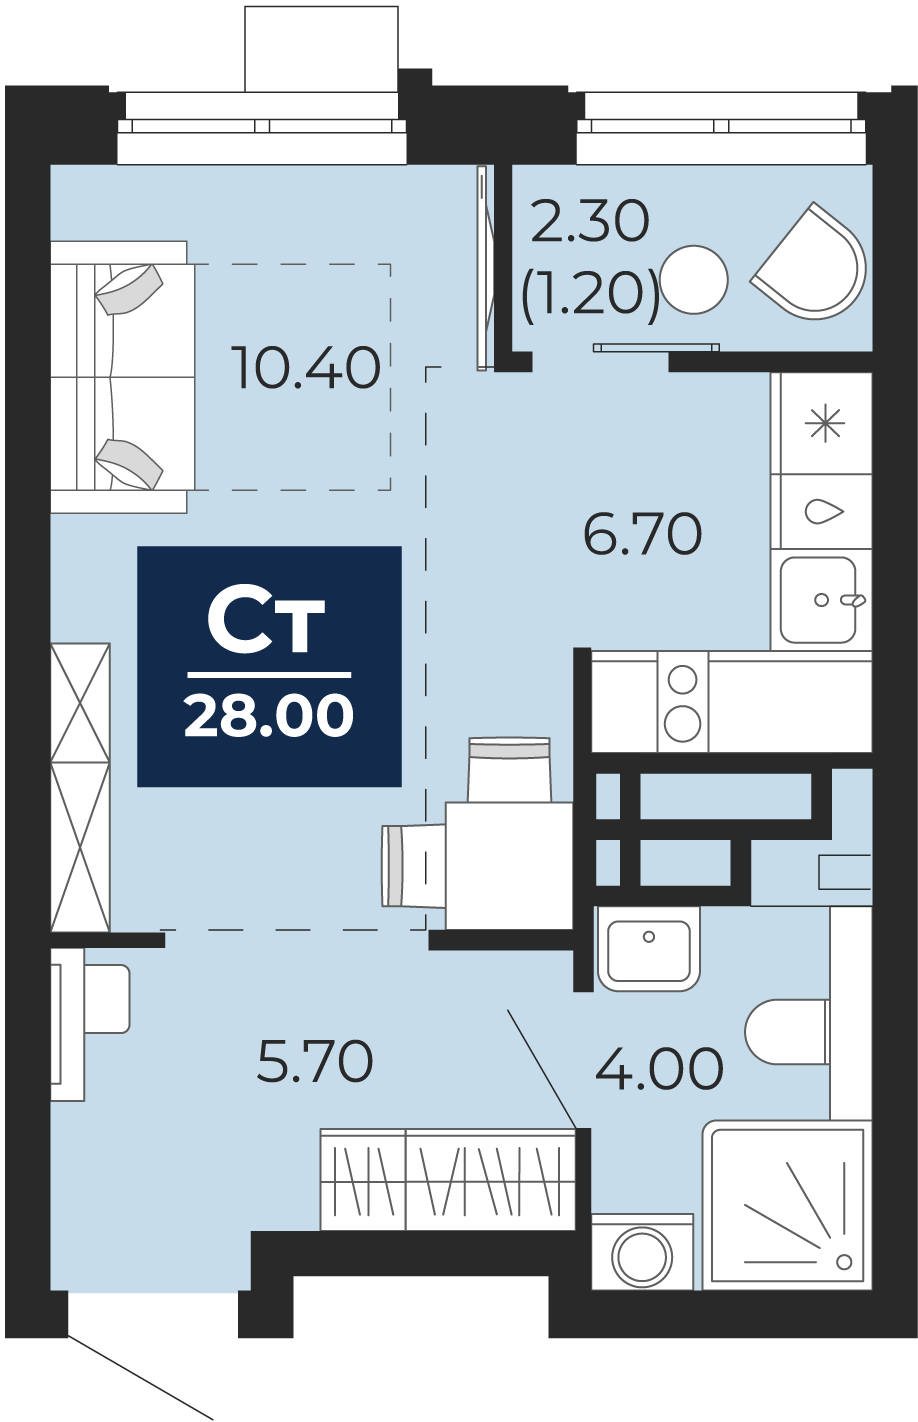 Квартира № 121, Студия, 28 кв. м, 5 этаж